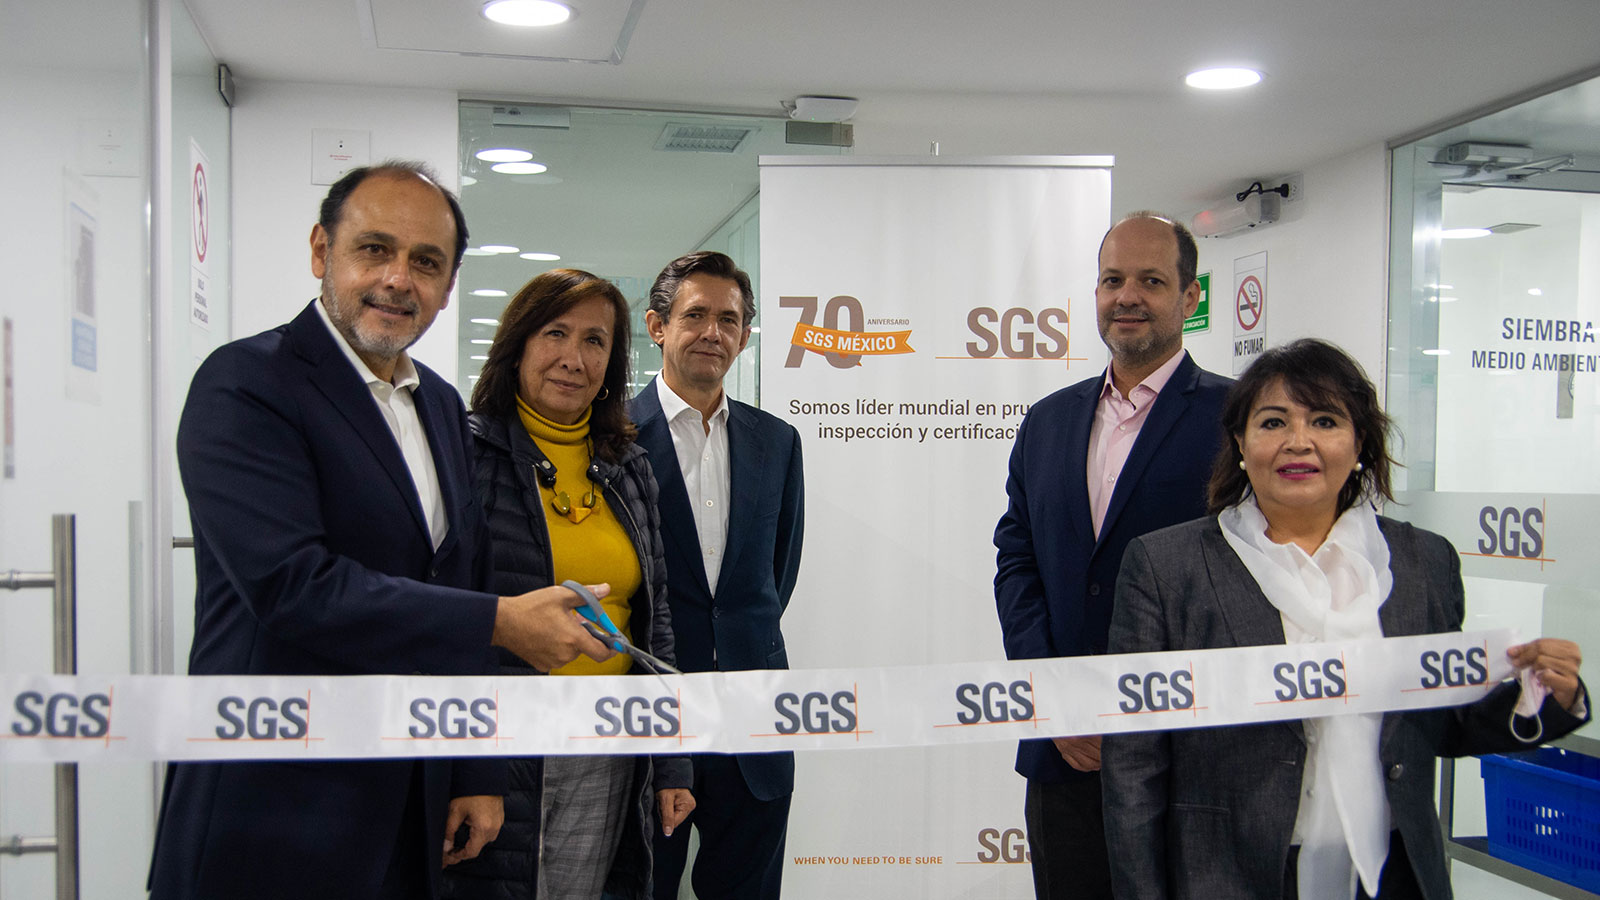 Vai trò chứng nhận SGS - tổ chức kiểm định chất lượng quốc tế.